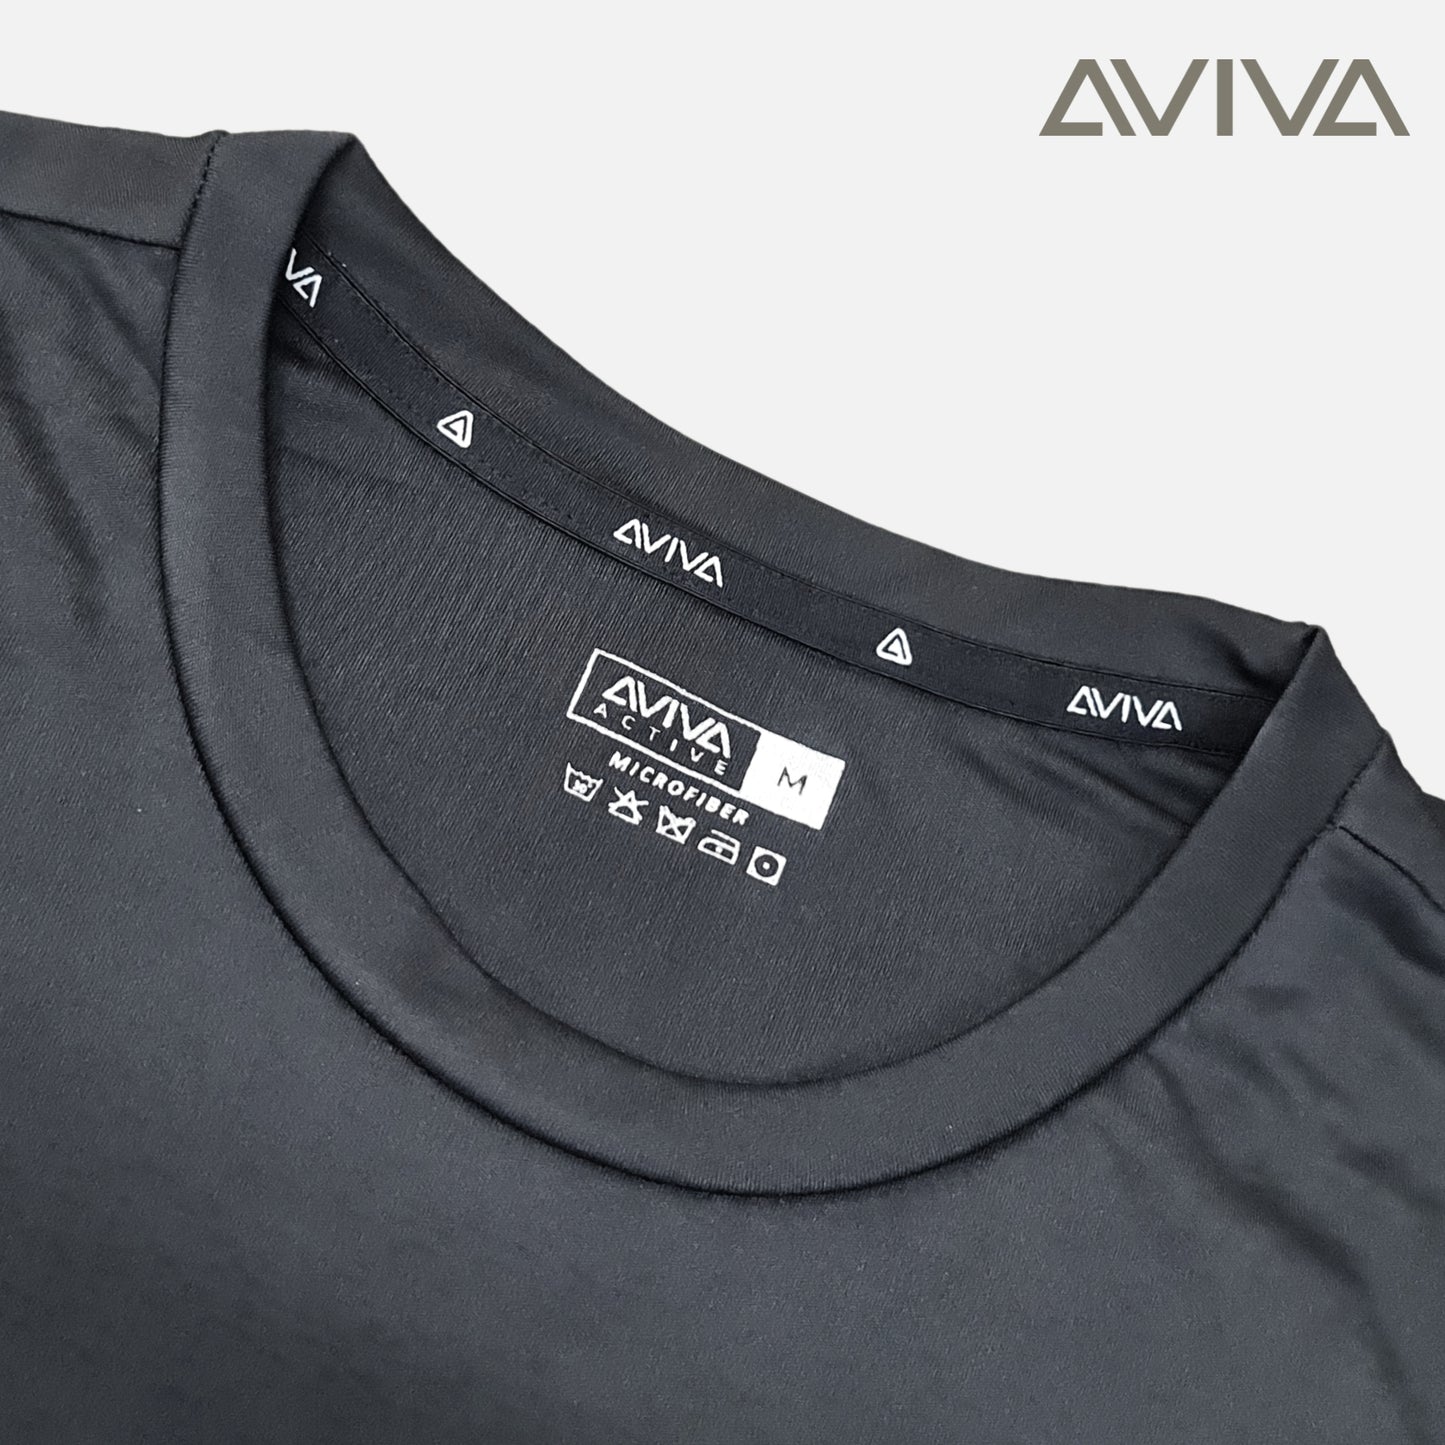 Aviva Men's Minimalist Short Sleeve Tee (91-8080)